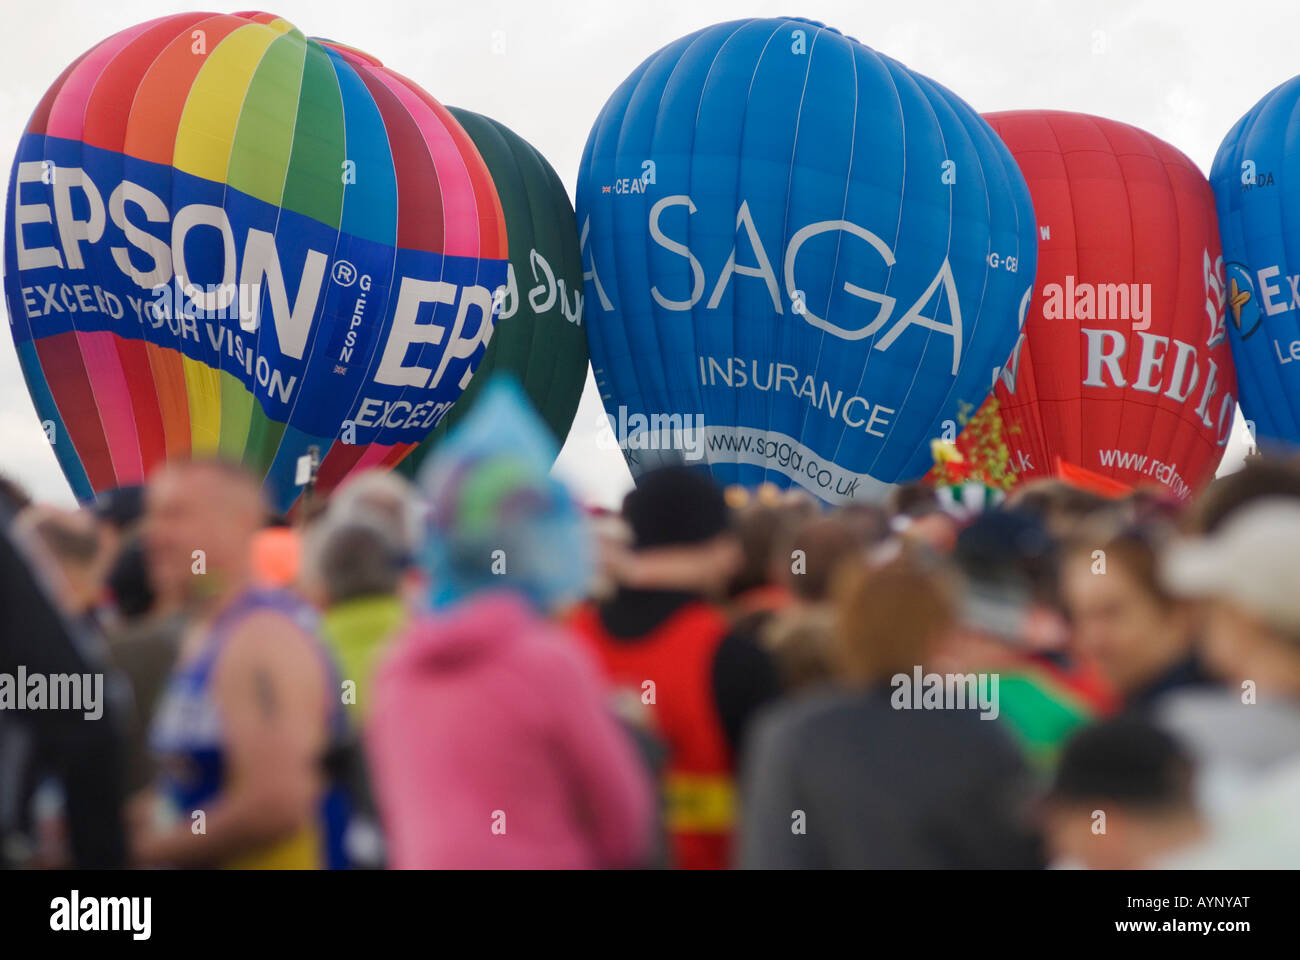 Les coureurs de marathon Sport montgolfière Parrainage Parrainage de promotion des ballons. Blackheath South London SE21 London UK HOMER SYKES Banque D'Images